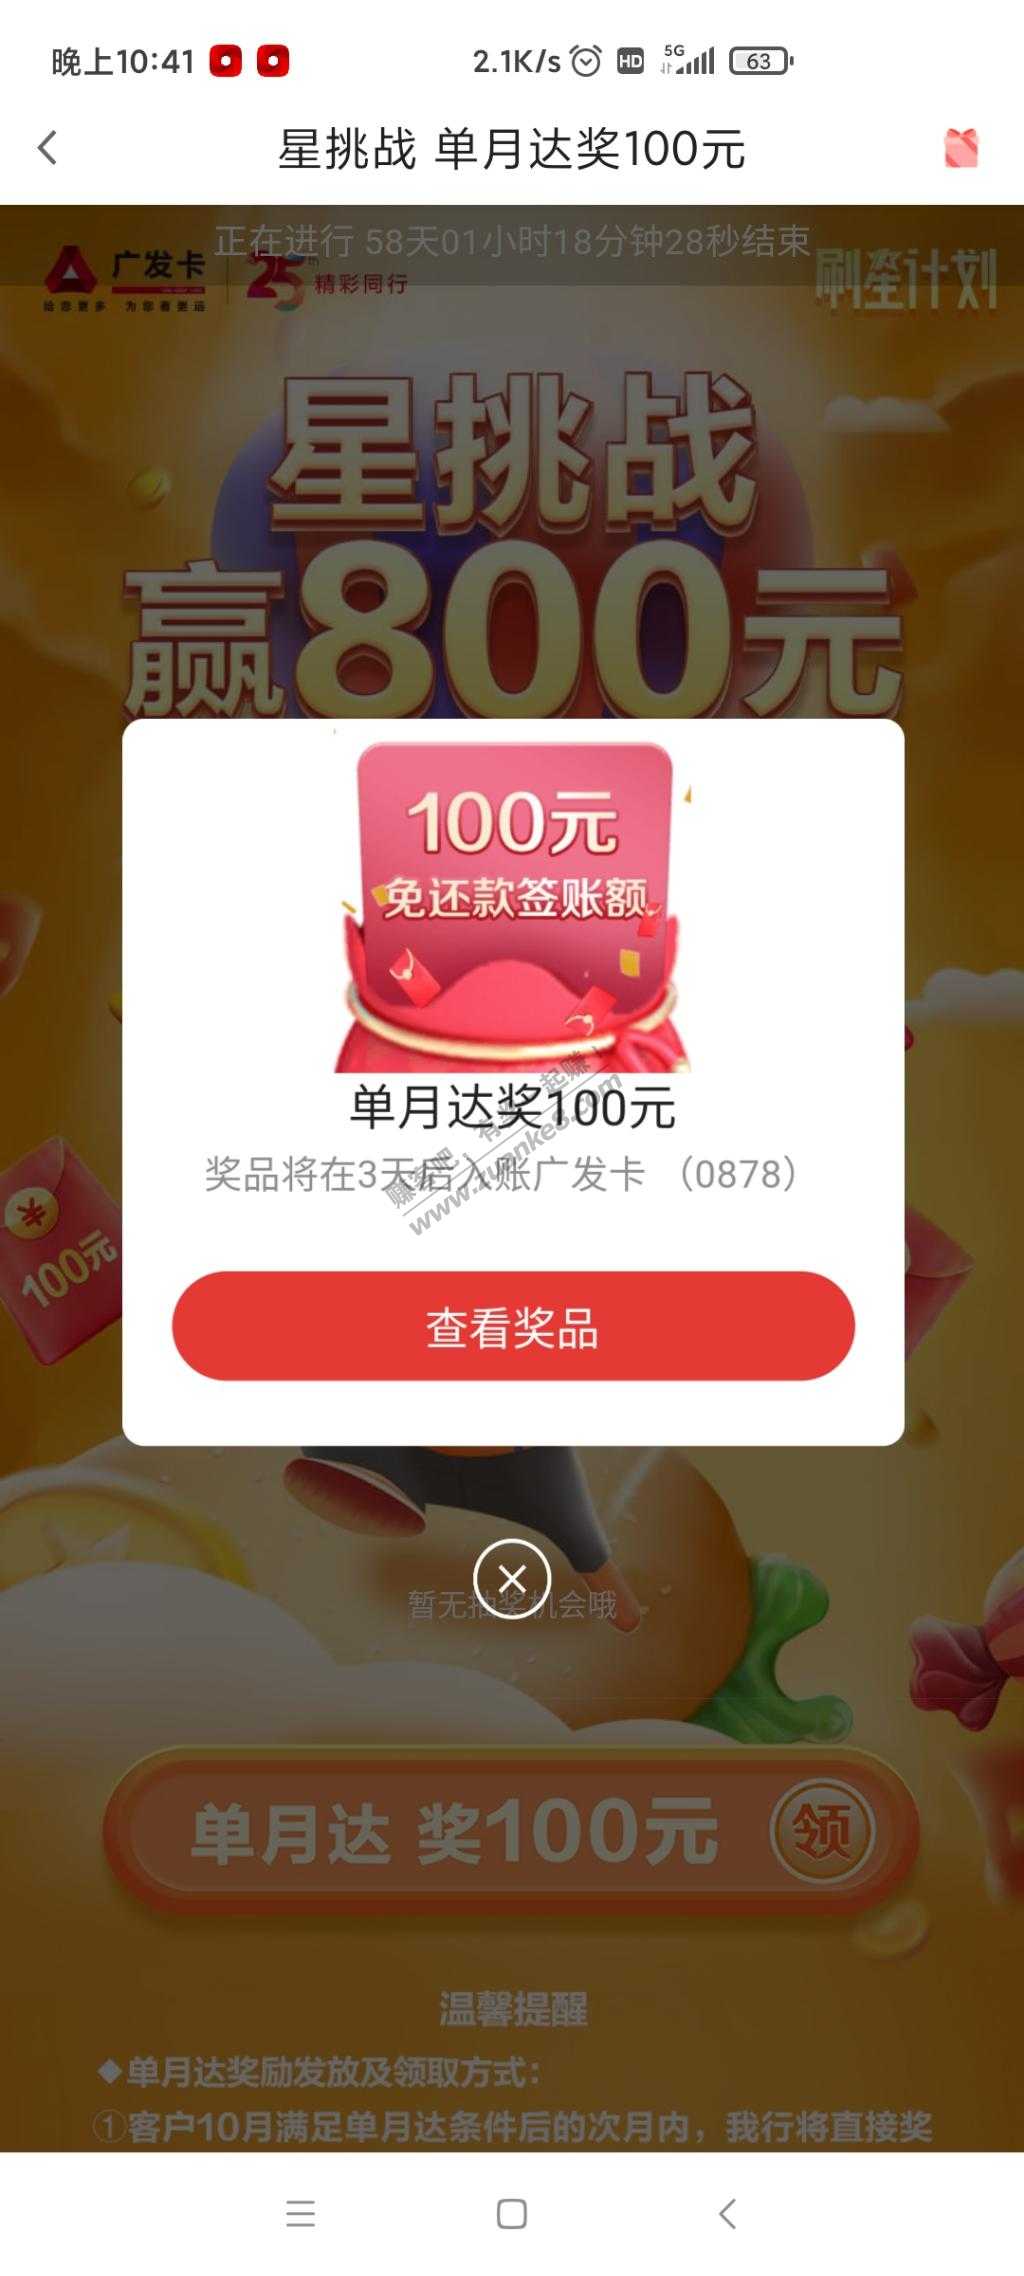 广发星挑战100消息推送了-惠小助(52huixz.com)